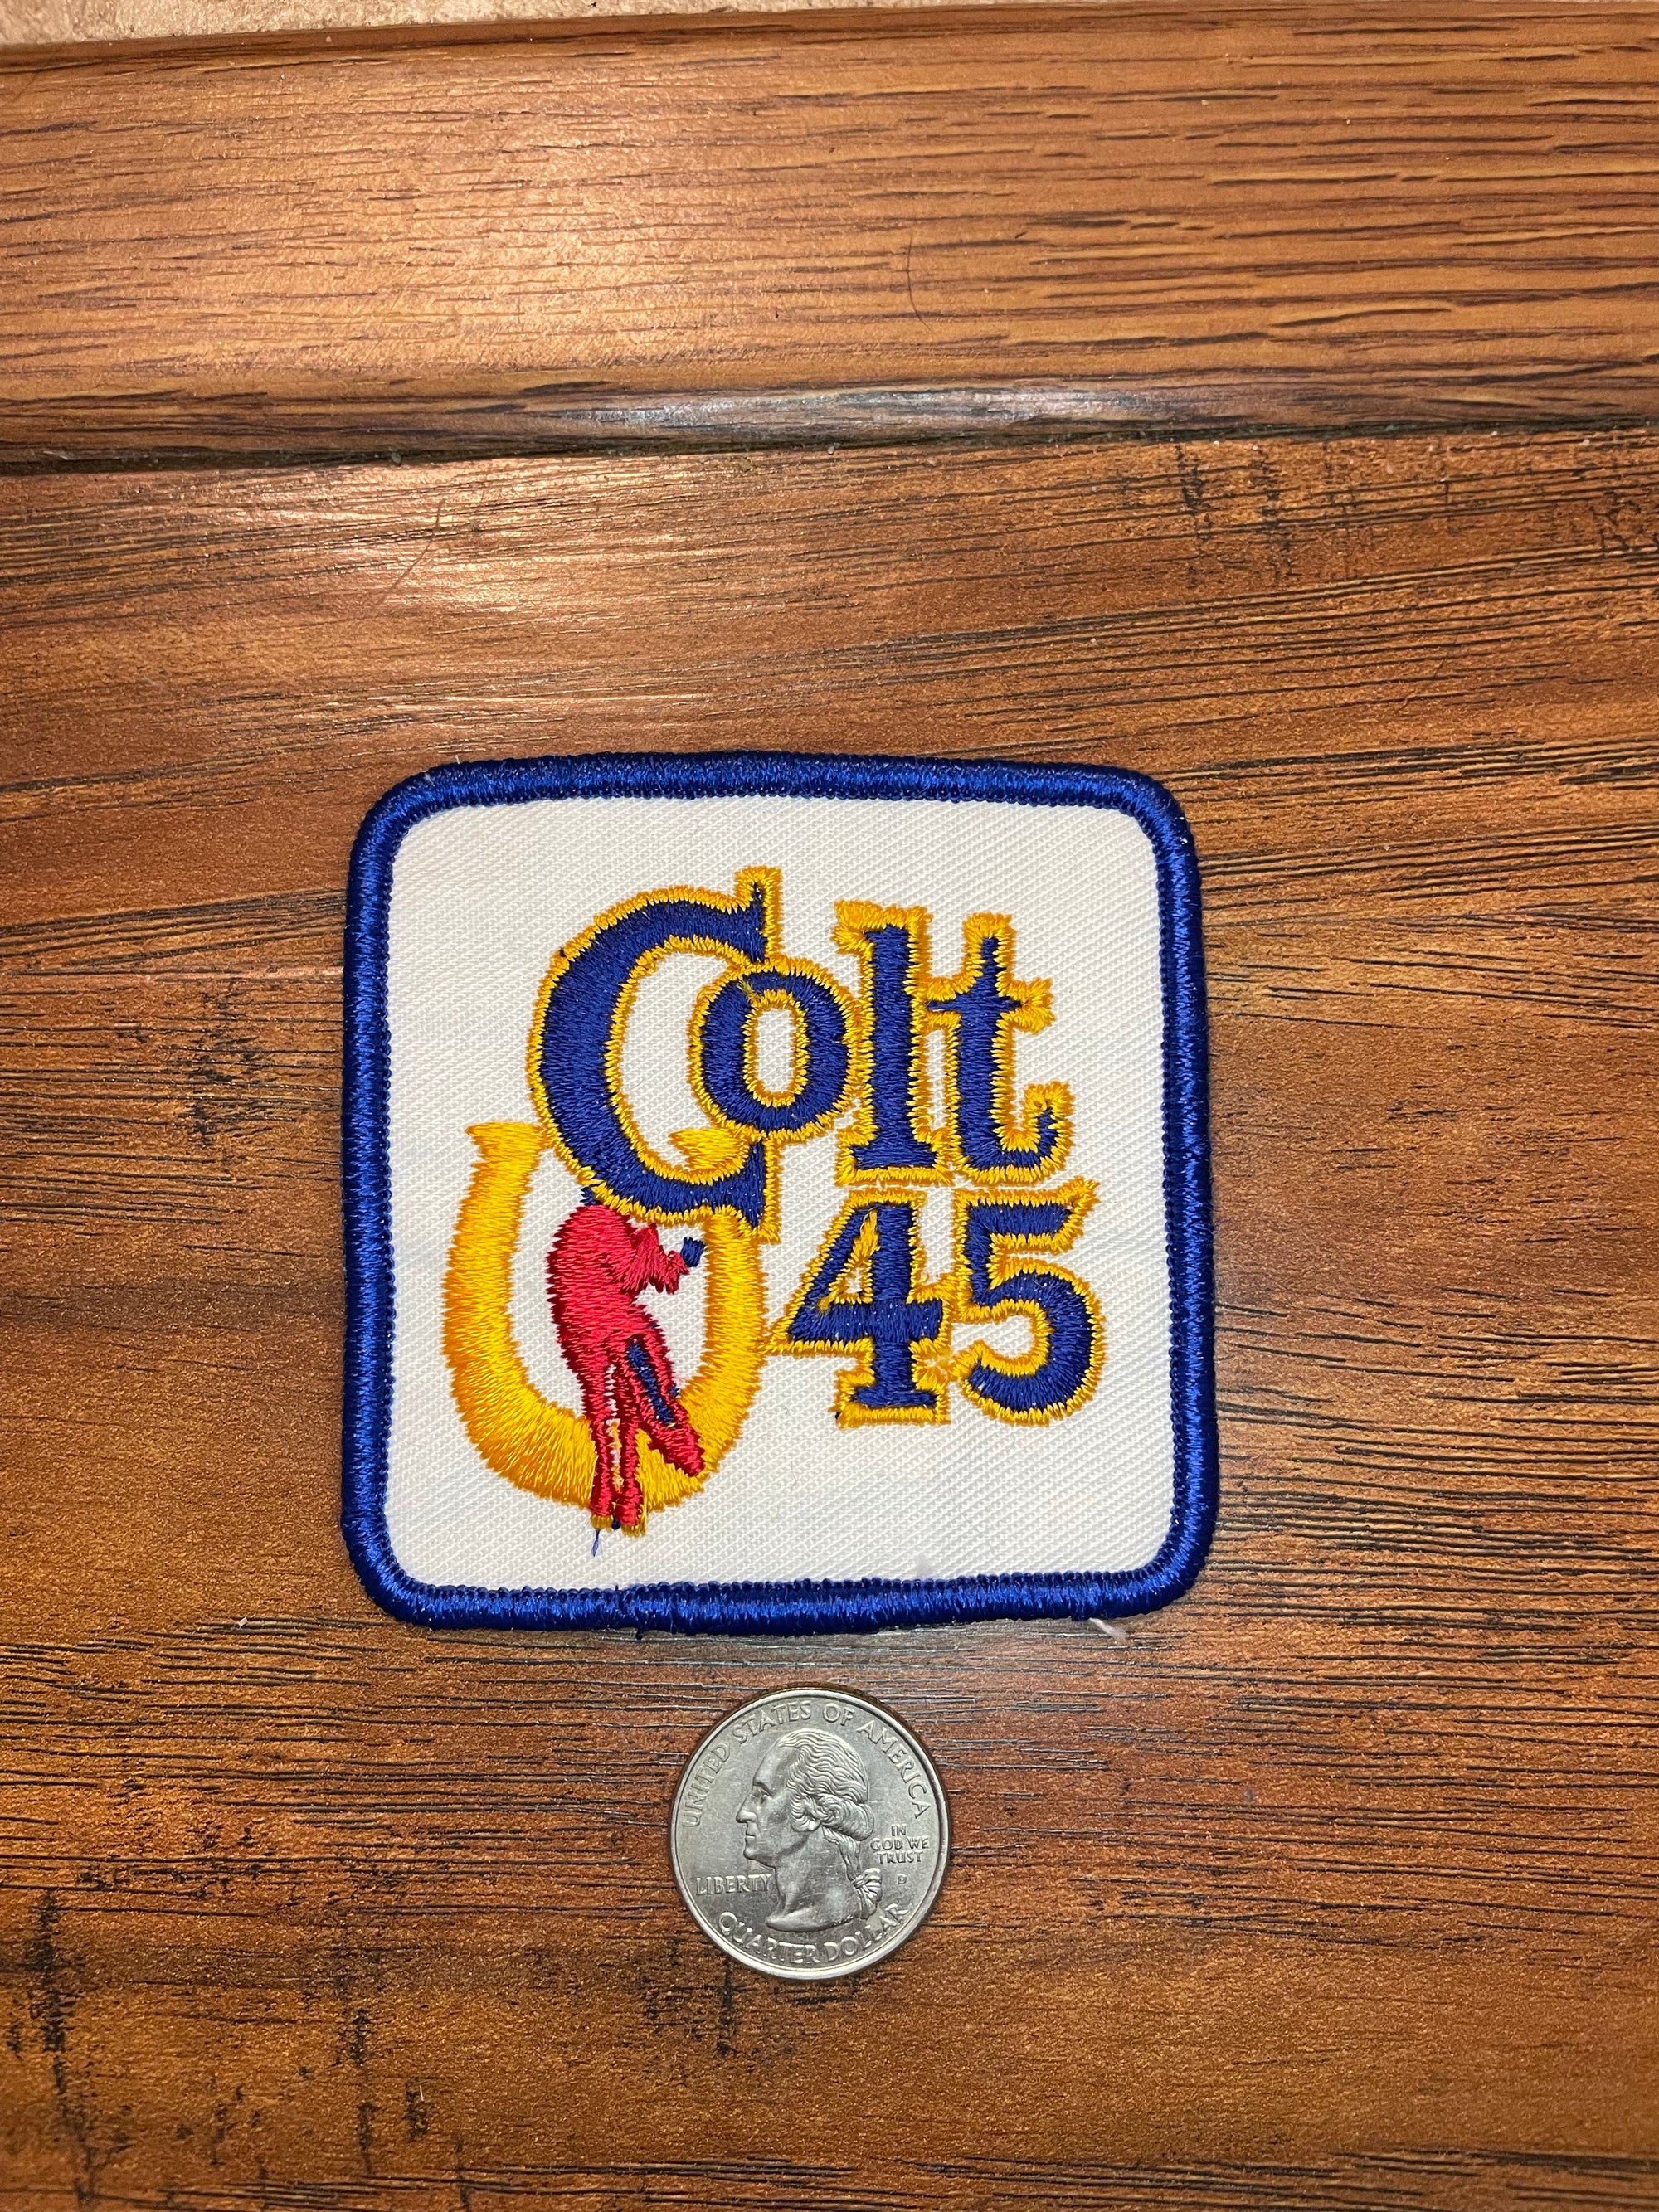 Vintage Colt 45